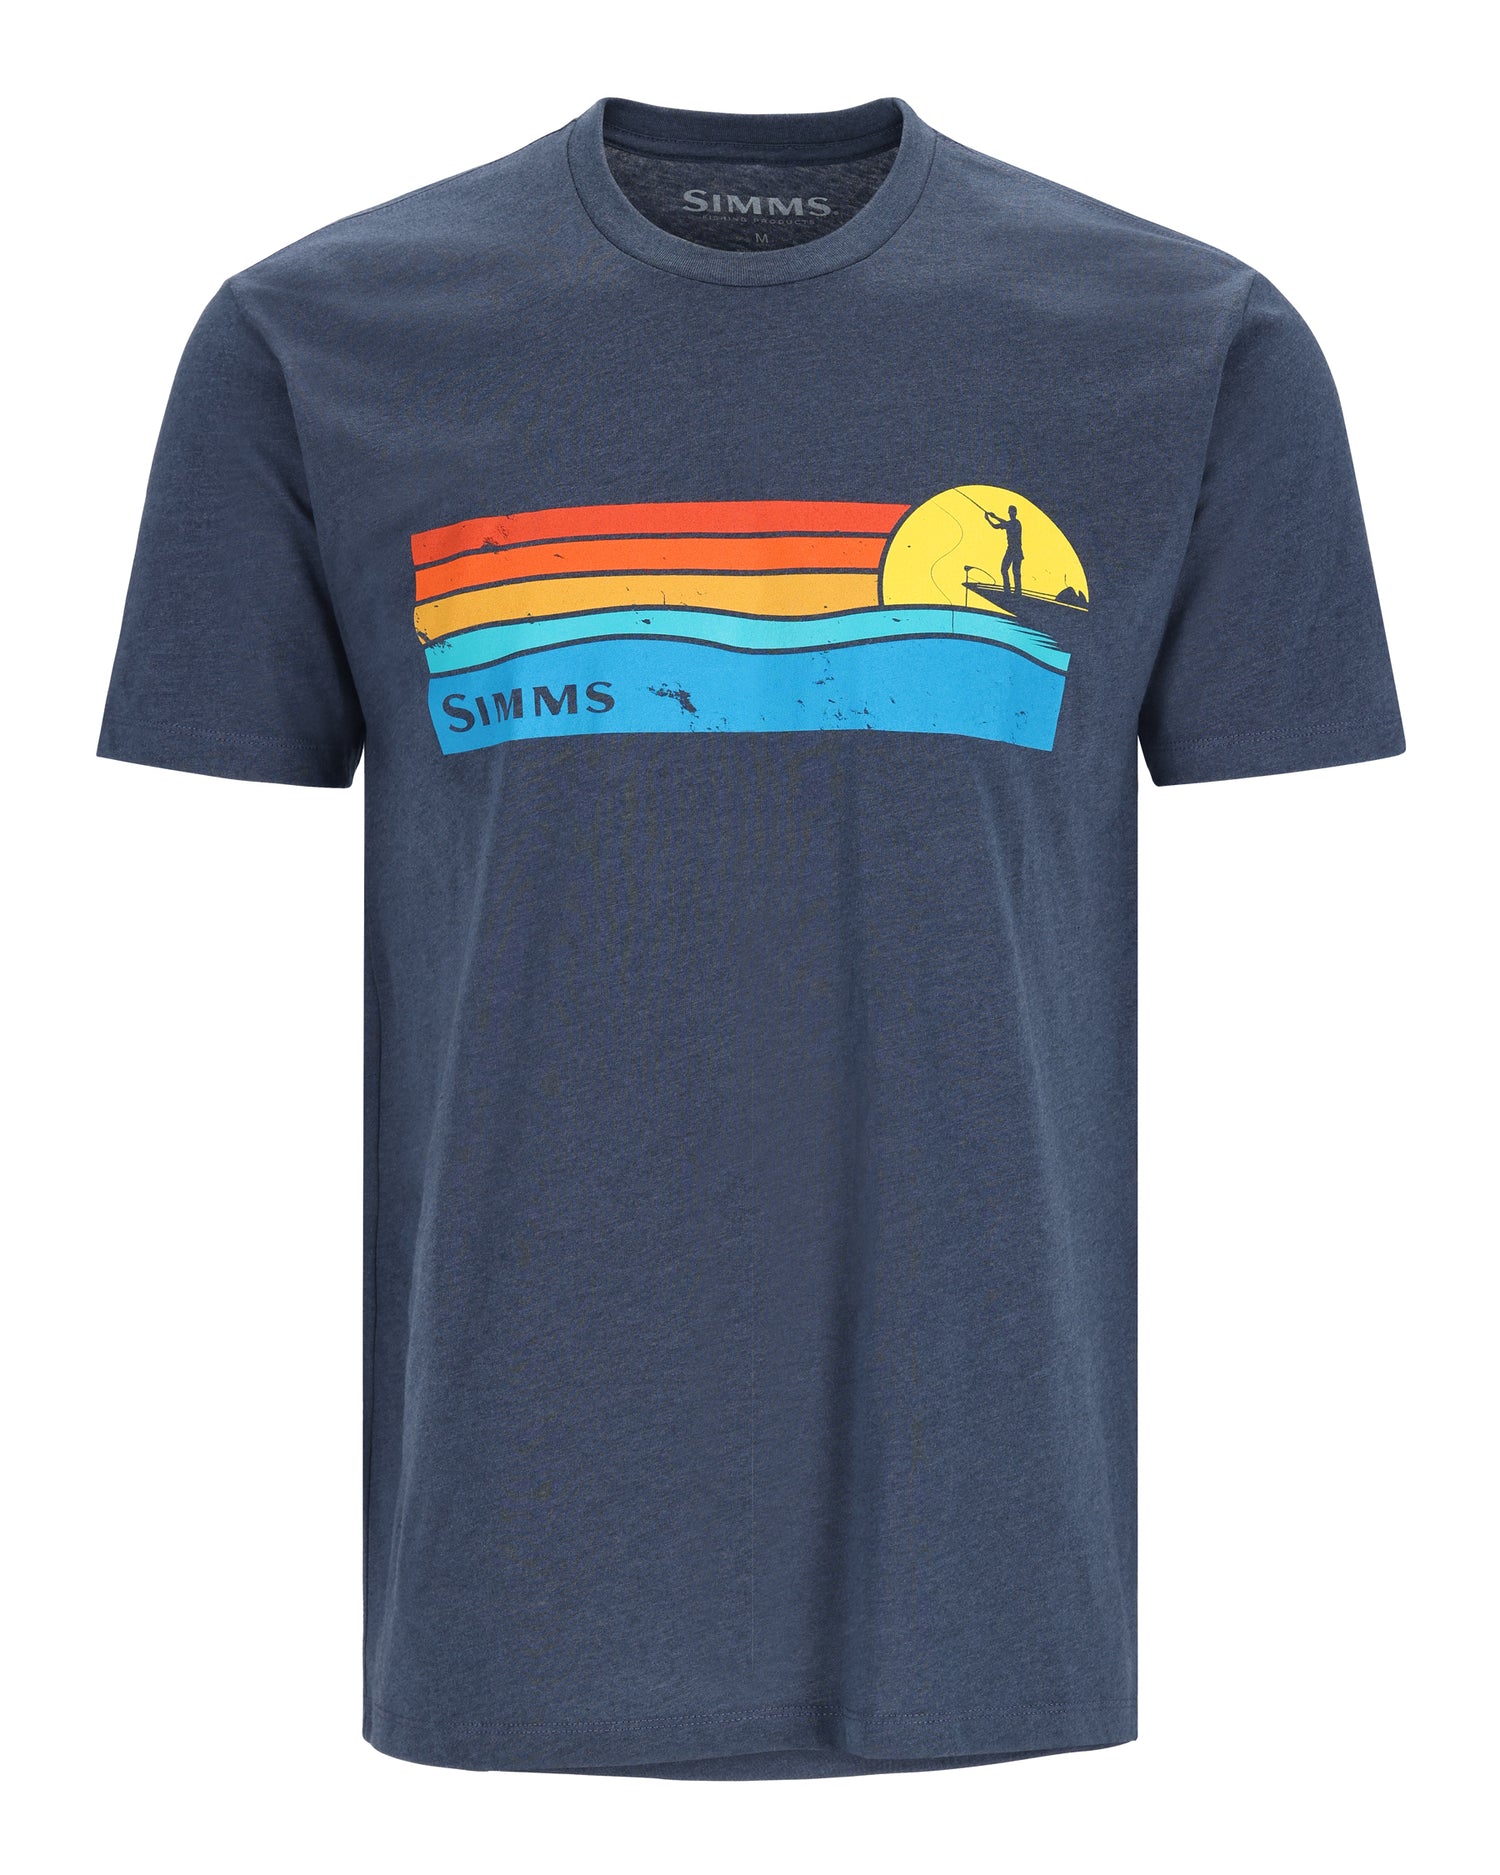    13781-414-simms-sunset-t-shirt-Mannequin -rollover